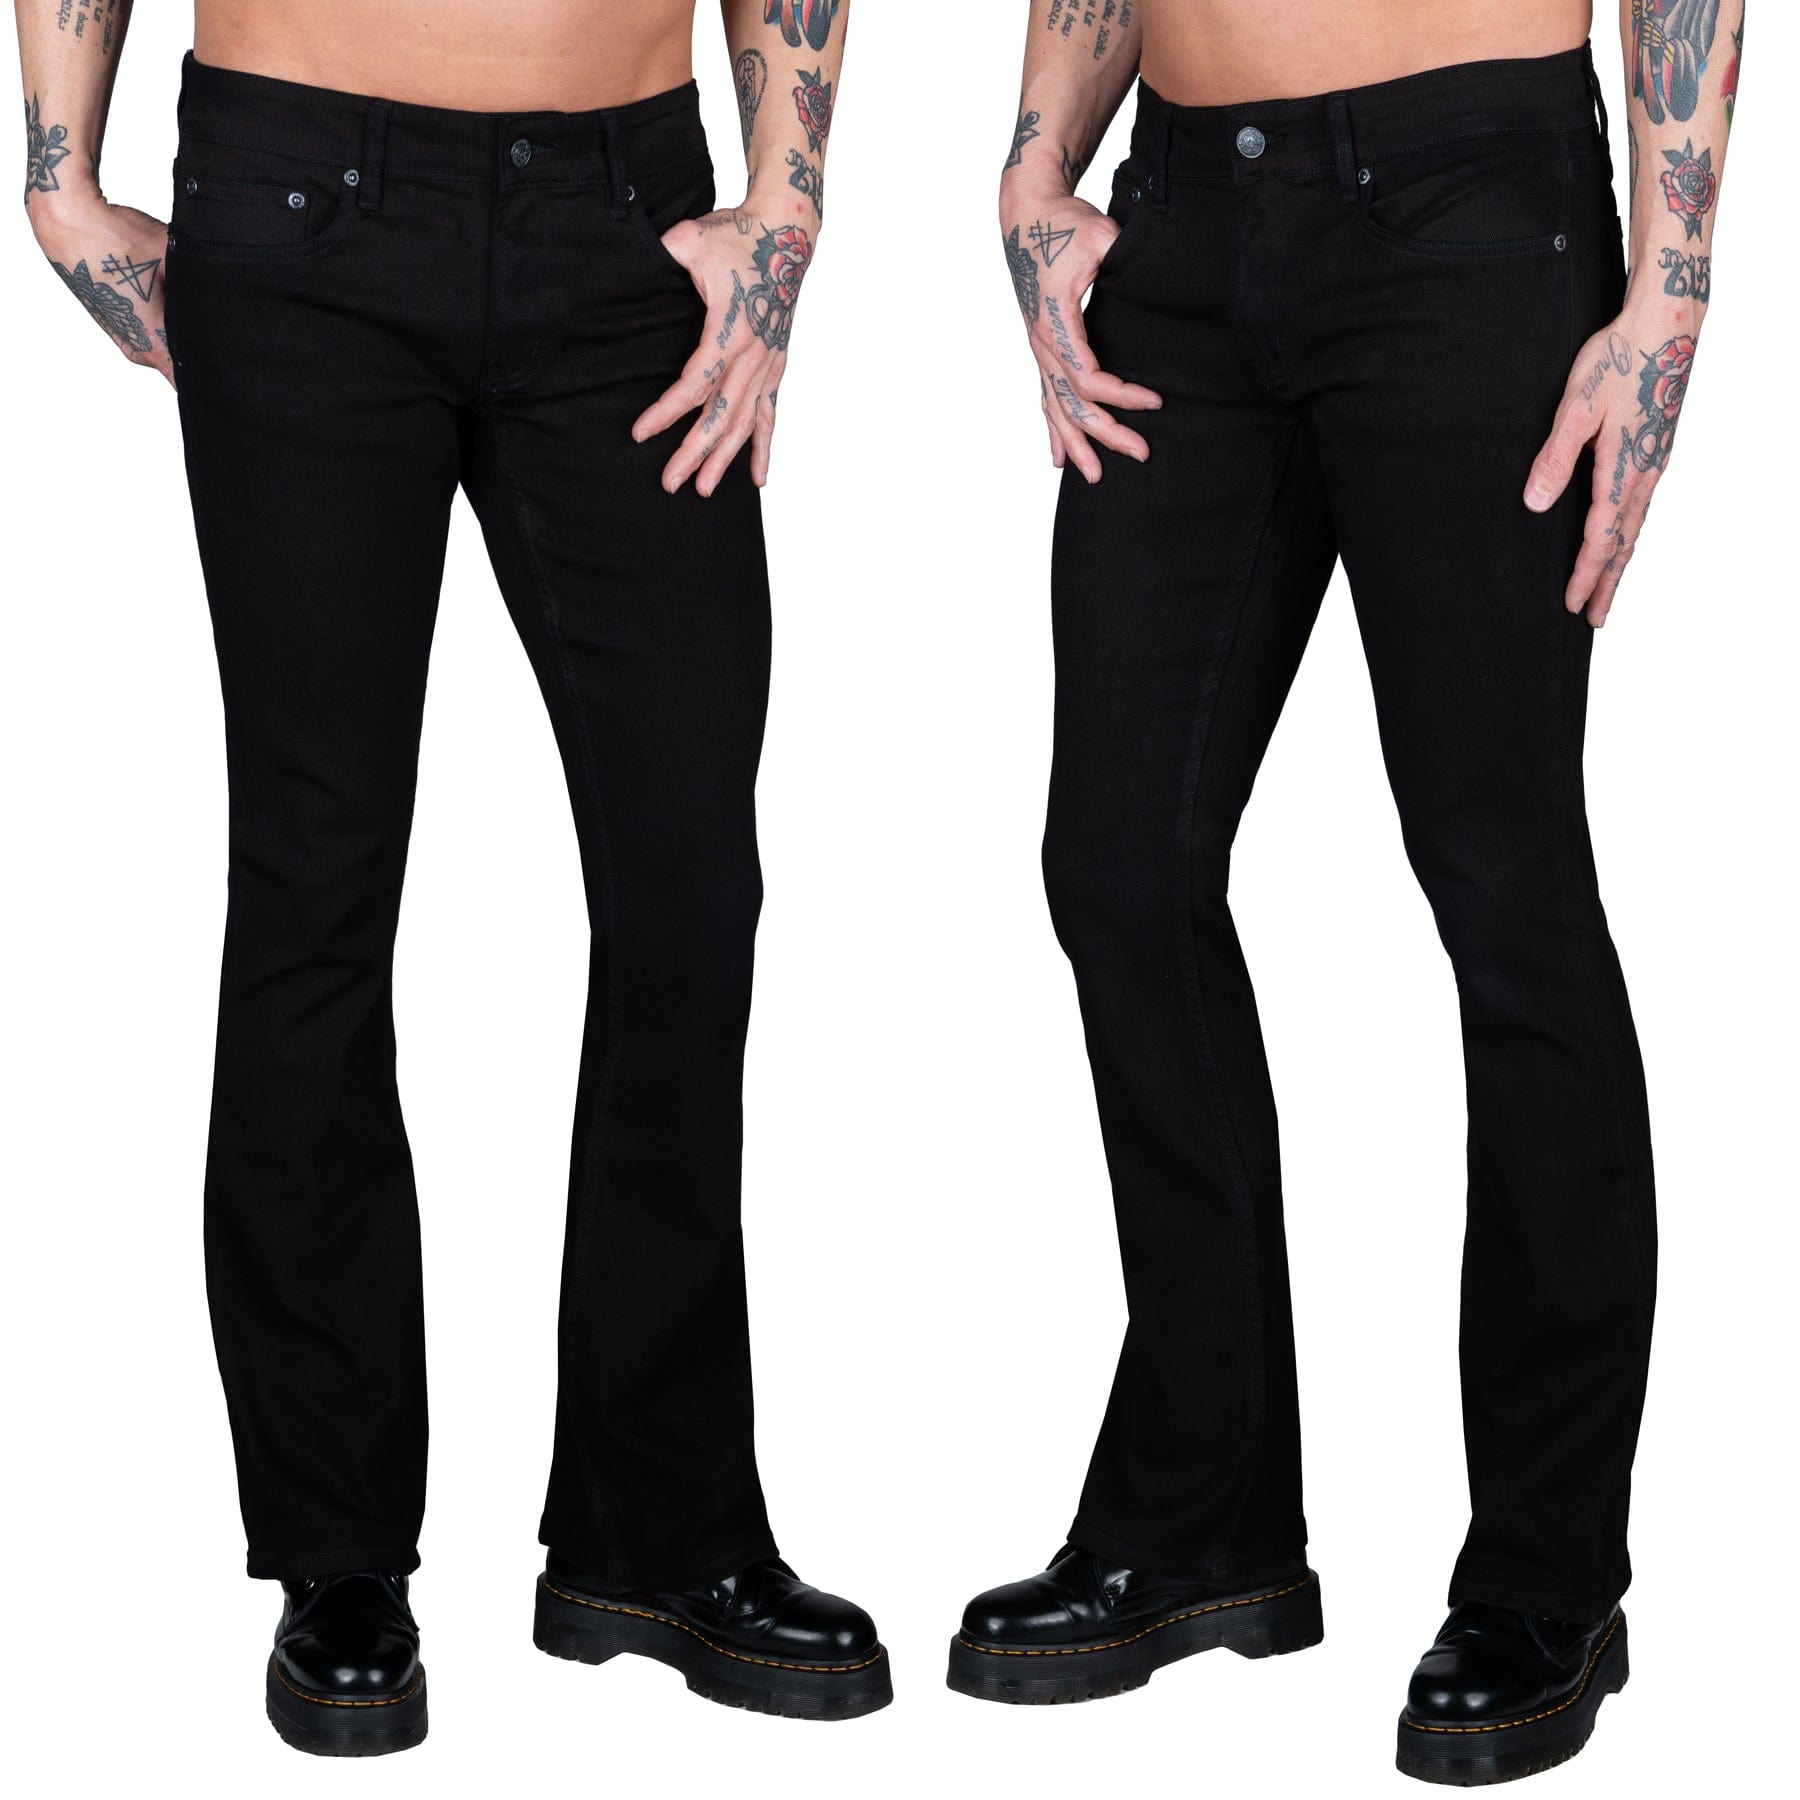 Wornstar Clothing Mens Jeans Hellraiser Coated Denim Pants - Black